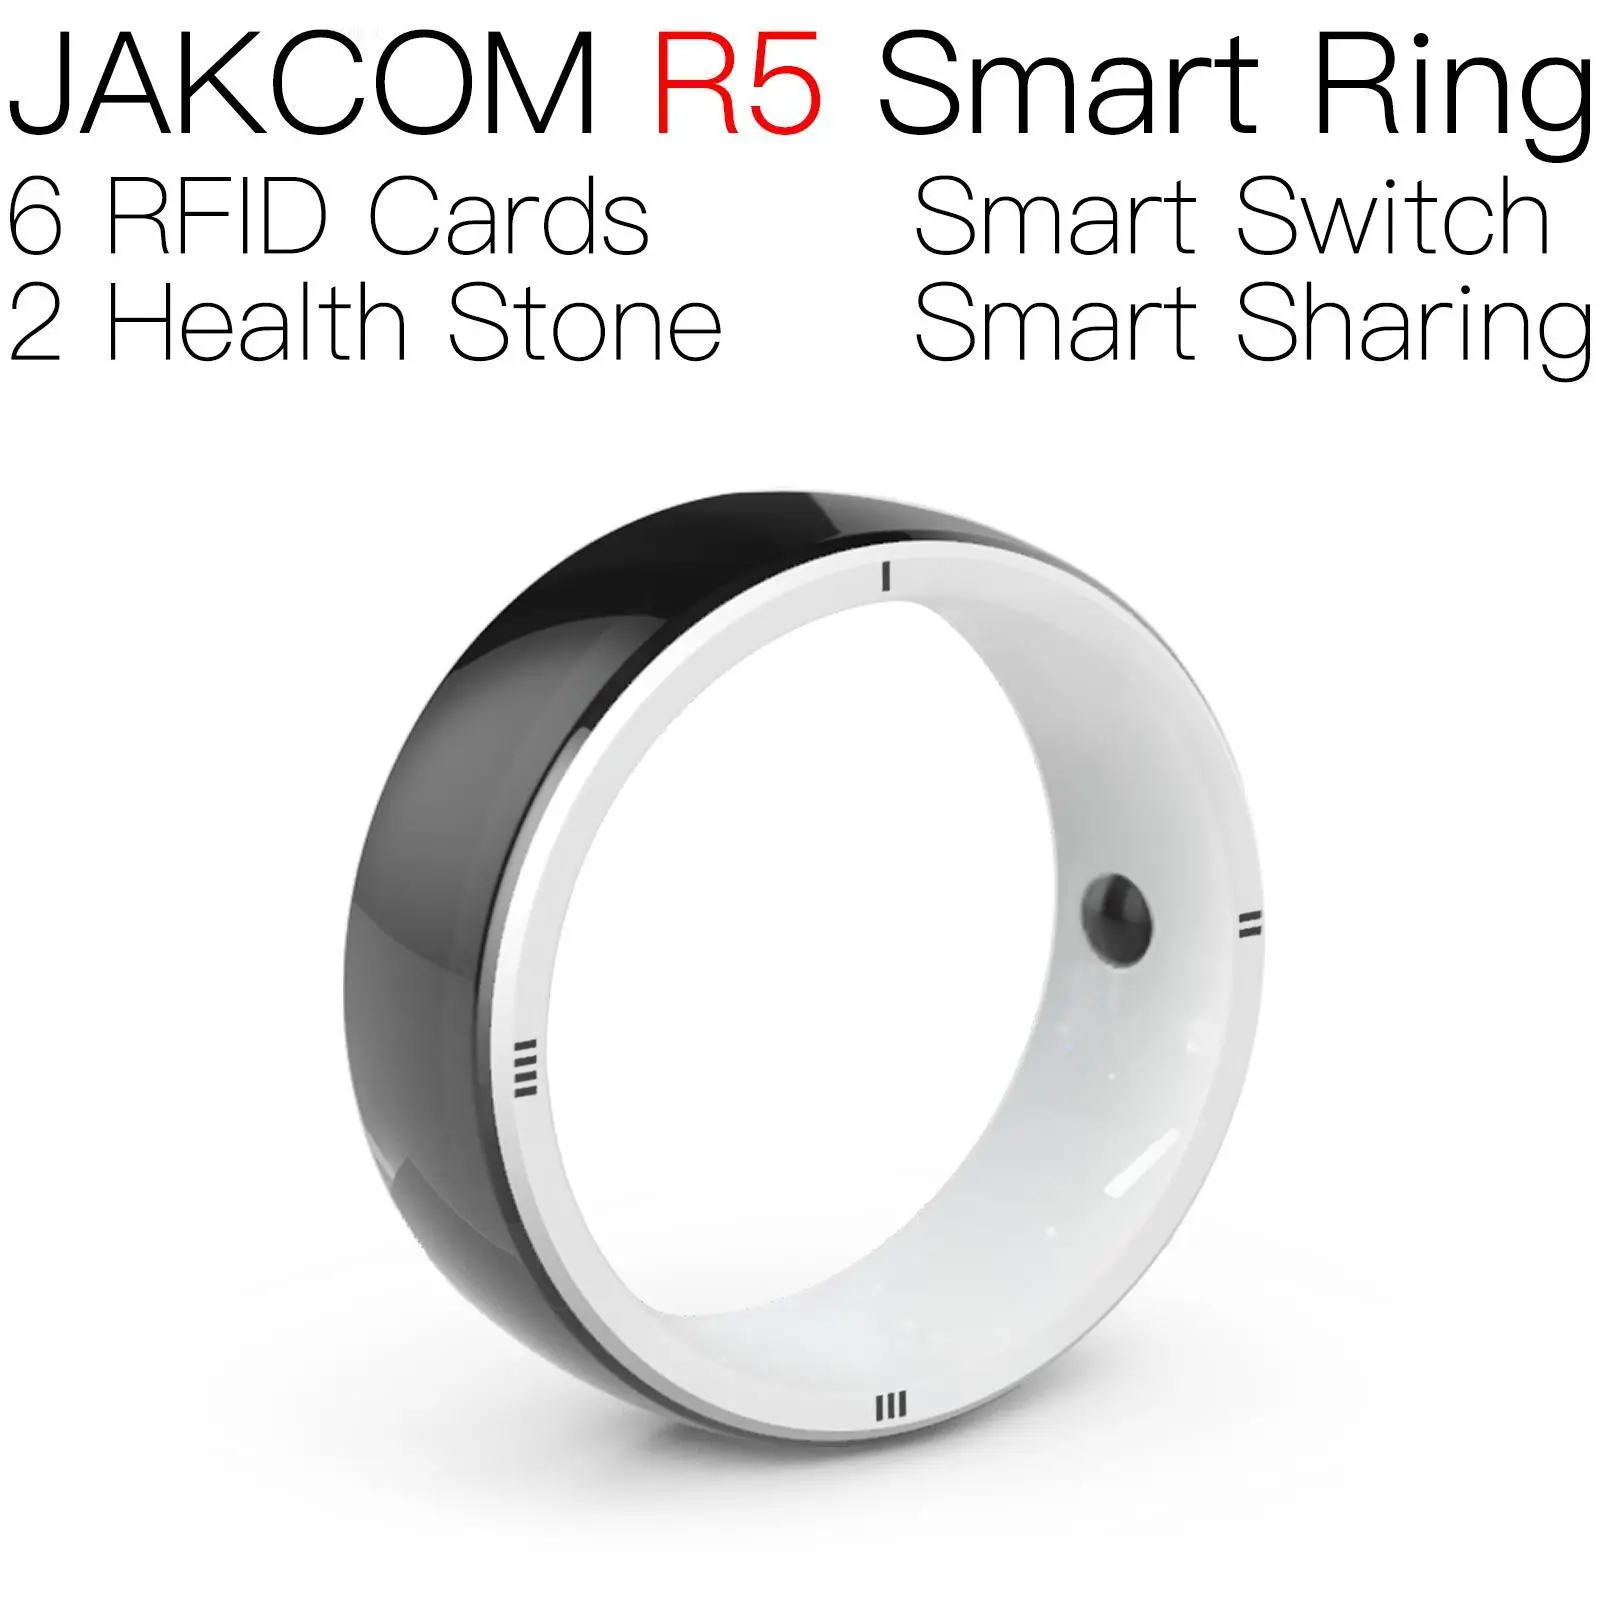 

JAKCOM R5 Smart Ring Super value than uid ring rfid tag adediva 100pcs 125khz strap window face id key uhf access card 2x12mm